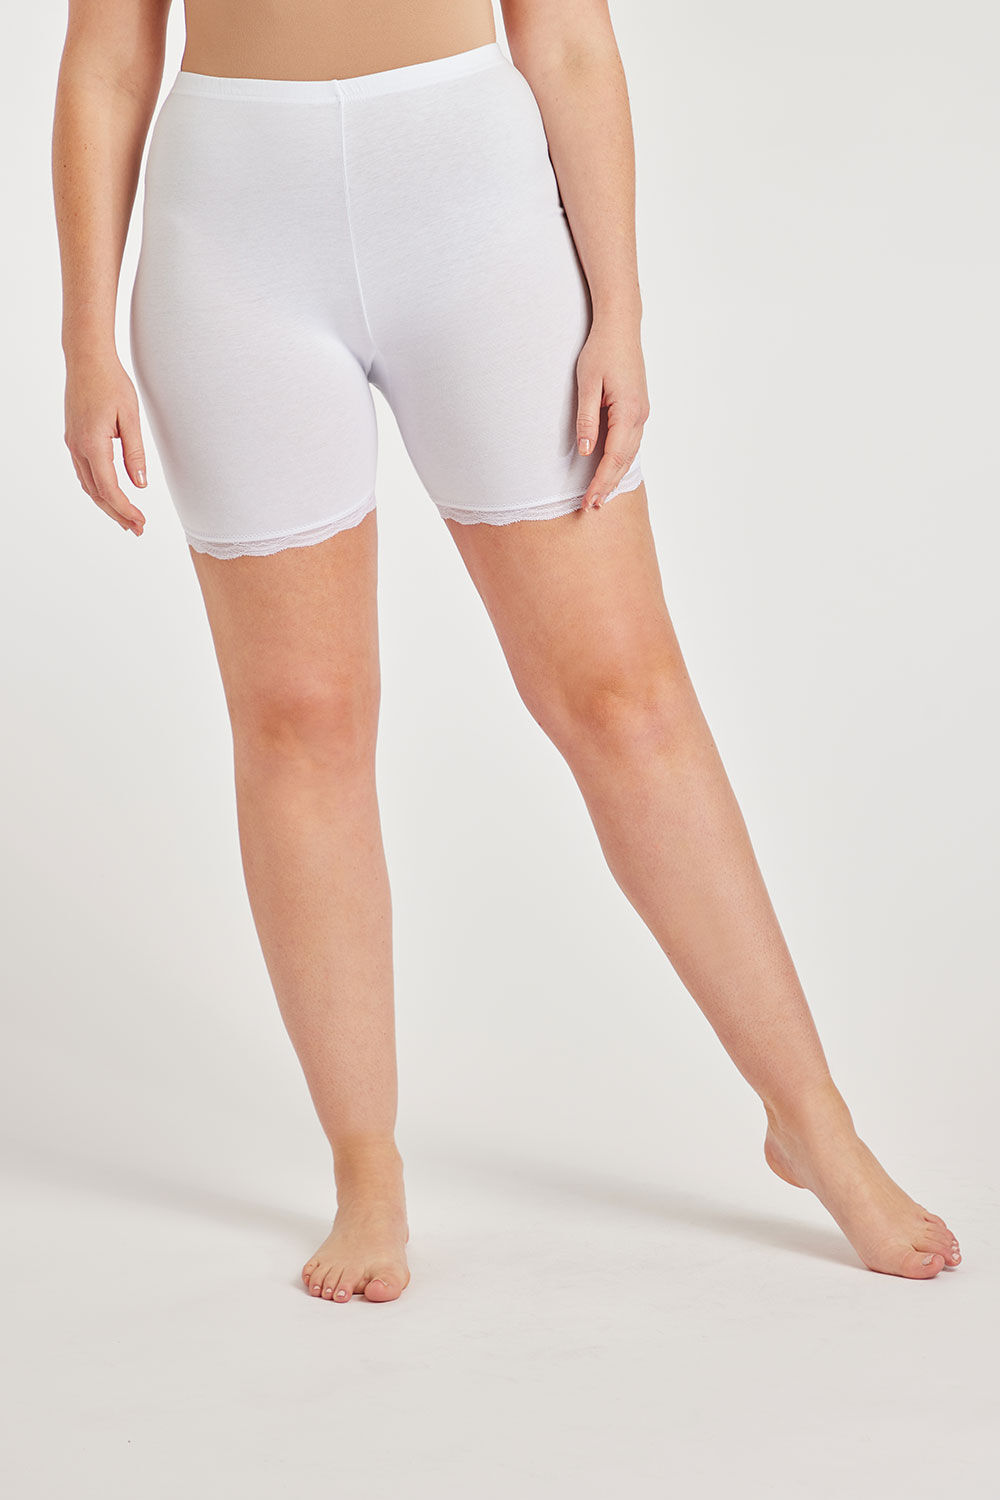 Bonmarche White Anti-Chafing Shorts, Size: 24-26